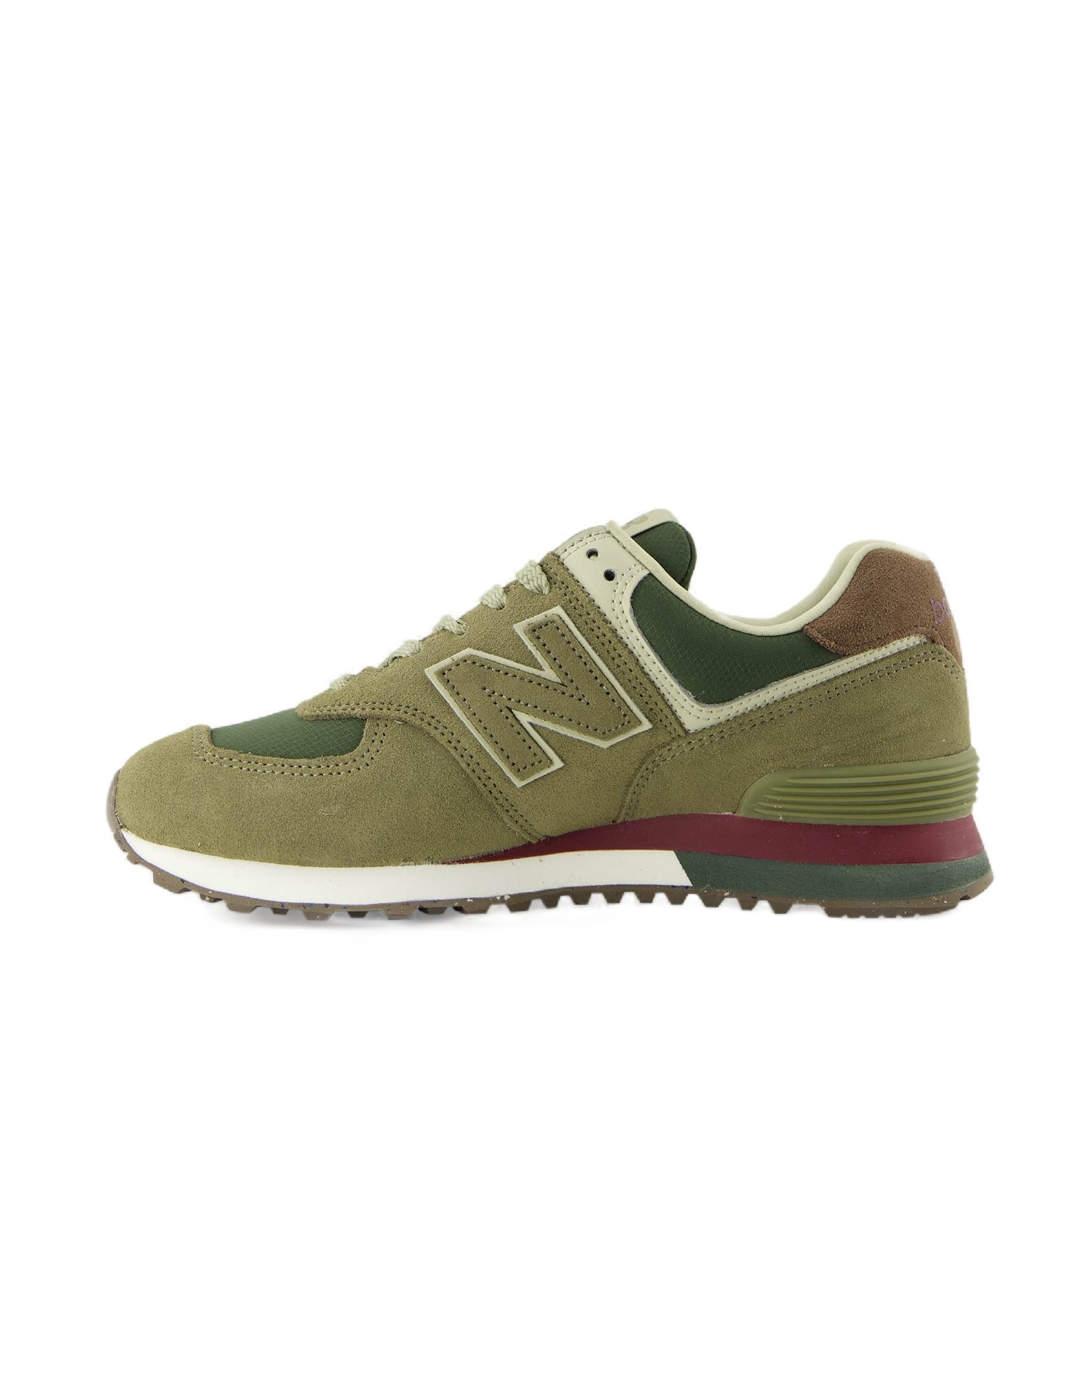 Zapatillas New Balance 574 verdes para hombre-Sd